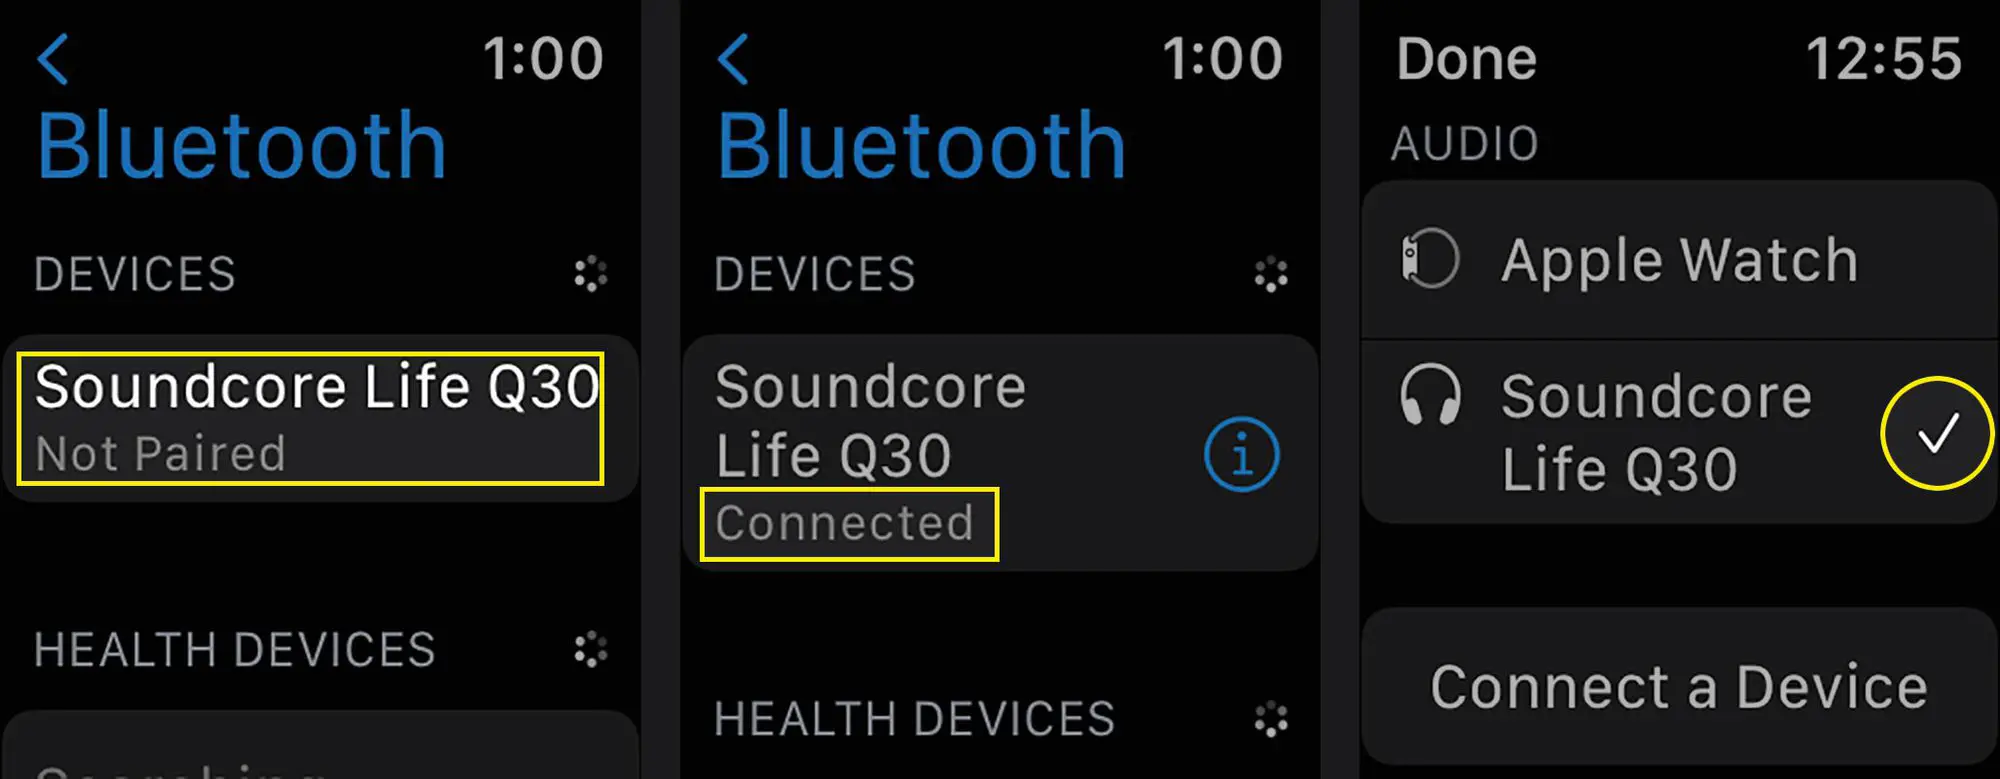 Emparelhar um conjunto de fones de ouvido Bluetooth e torná-los a saída de áudio ativa em um Apple Watch